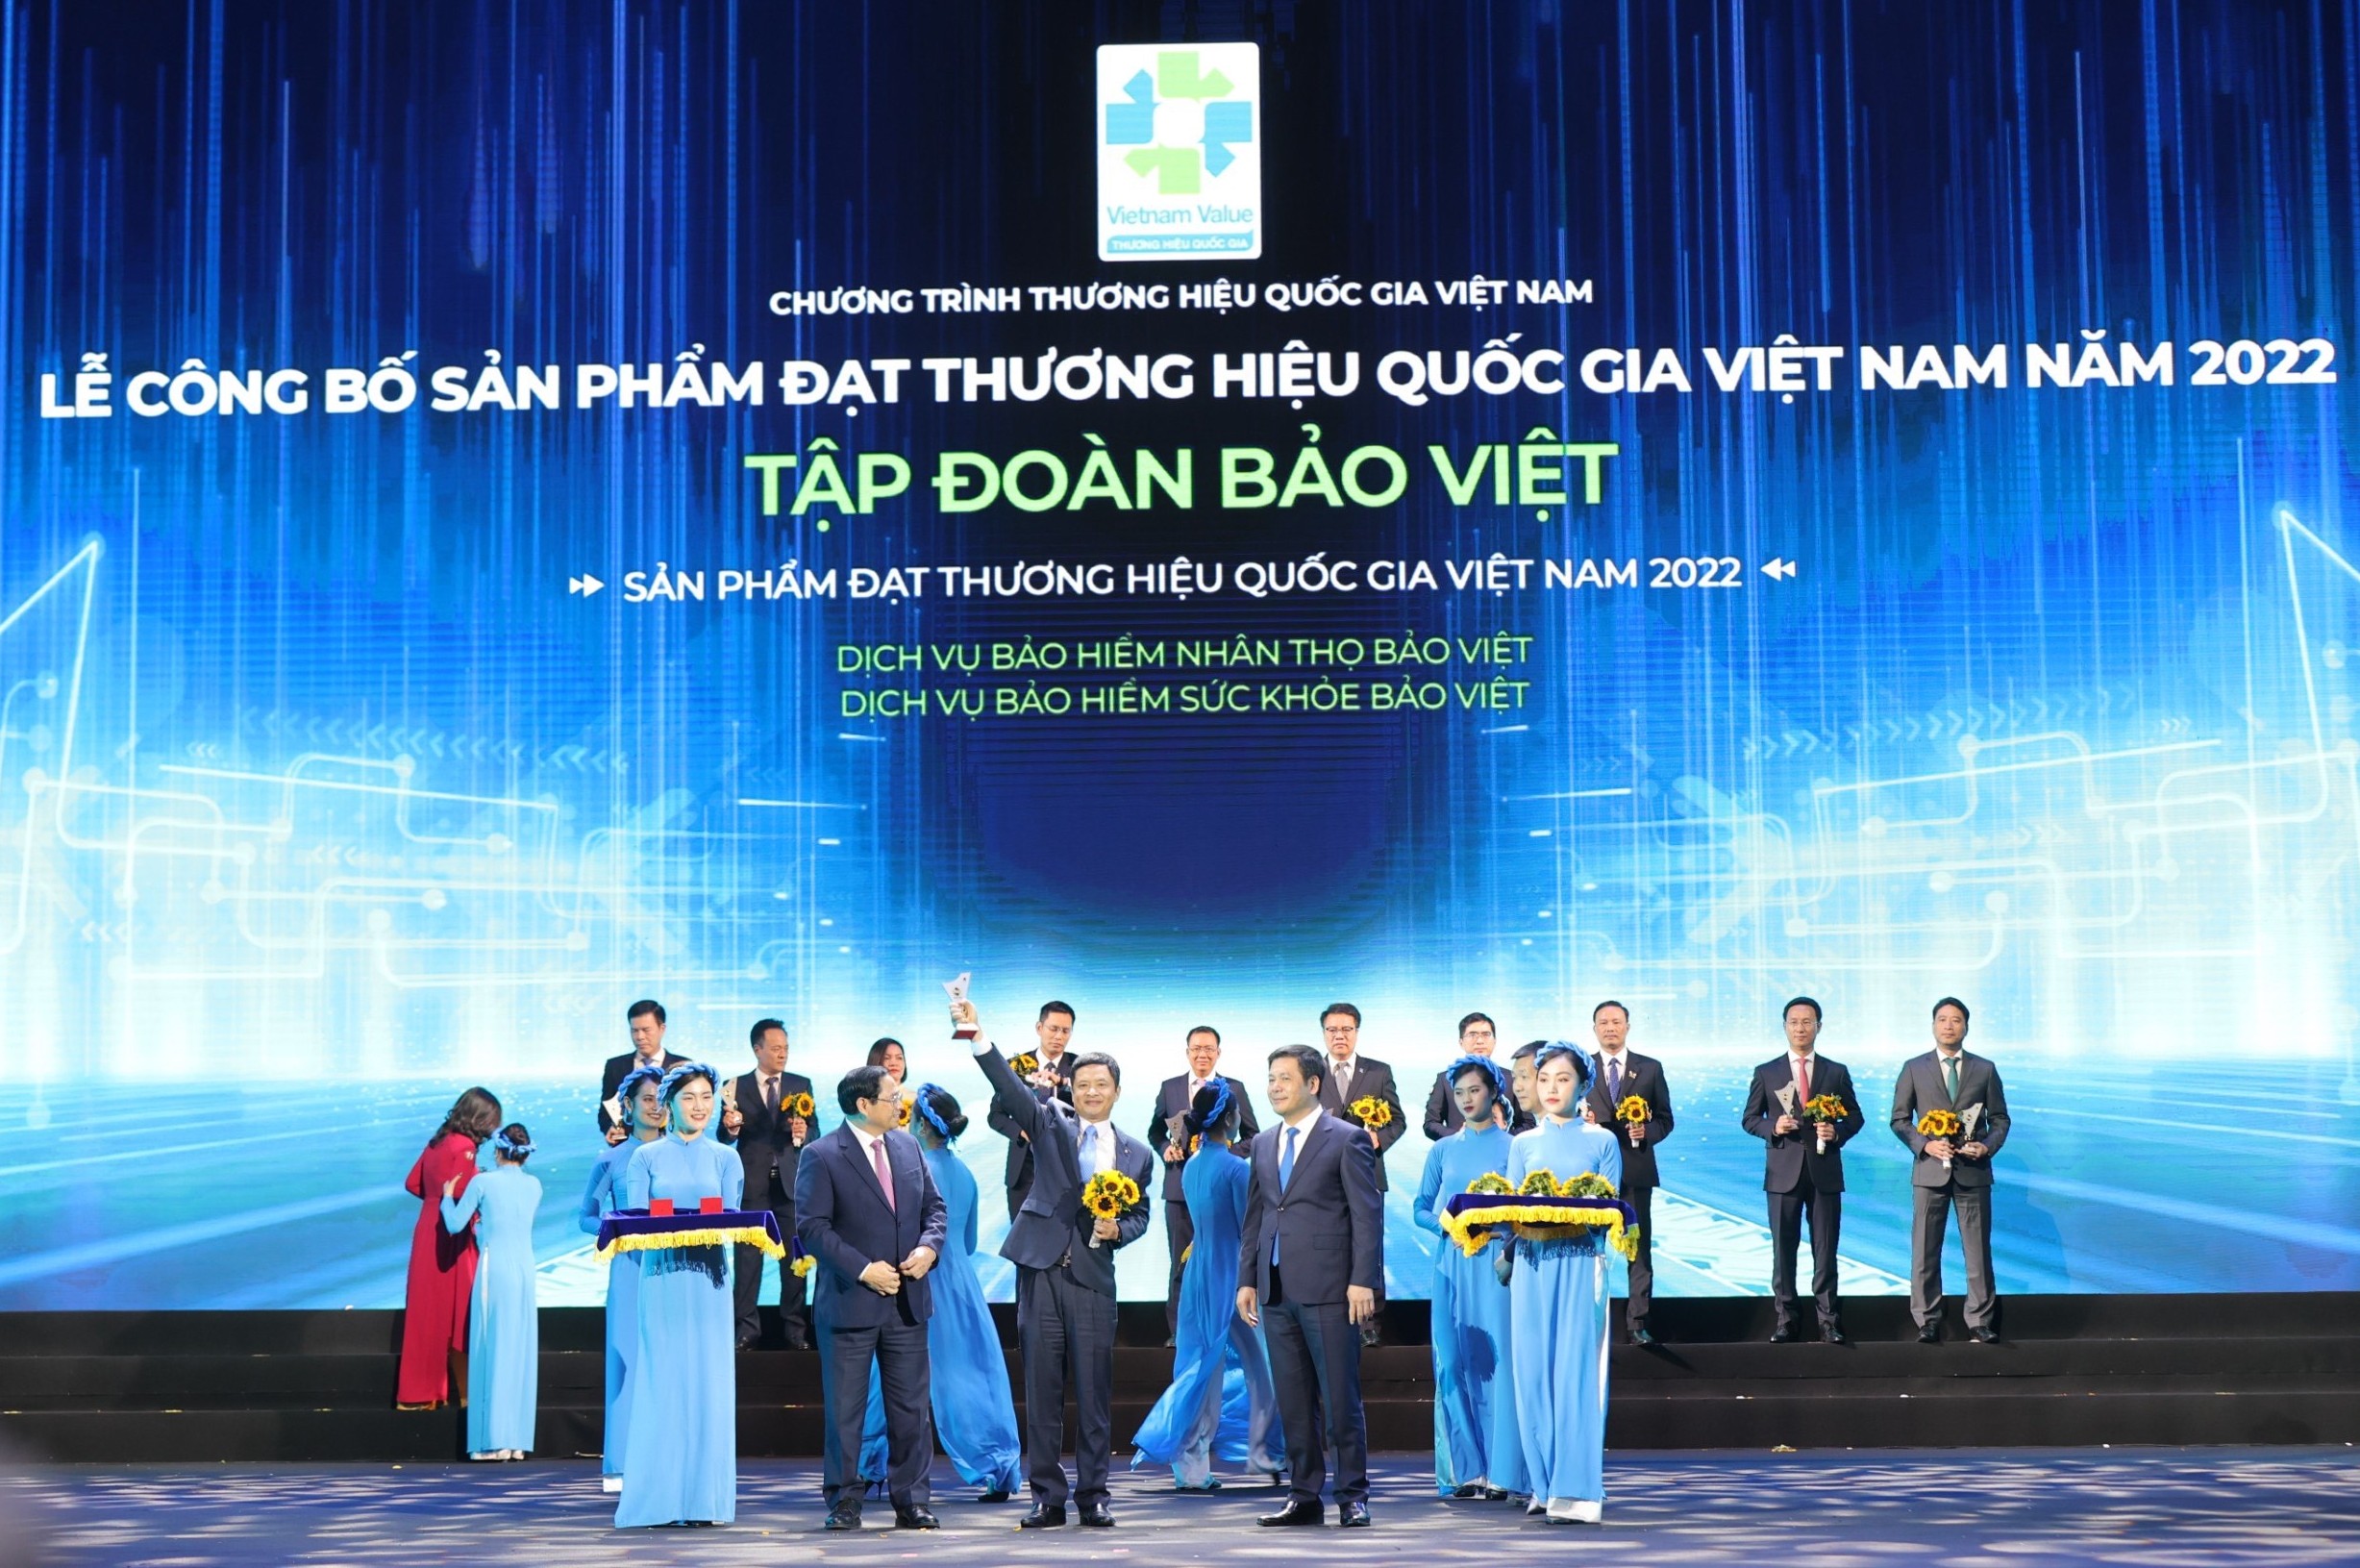 Bảo Việt- Thương hiệu bảo hiểm duy nhất được vinh danh Thương hiệu quốc gia (Vietnam Value)